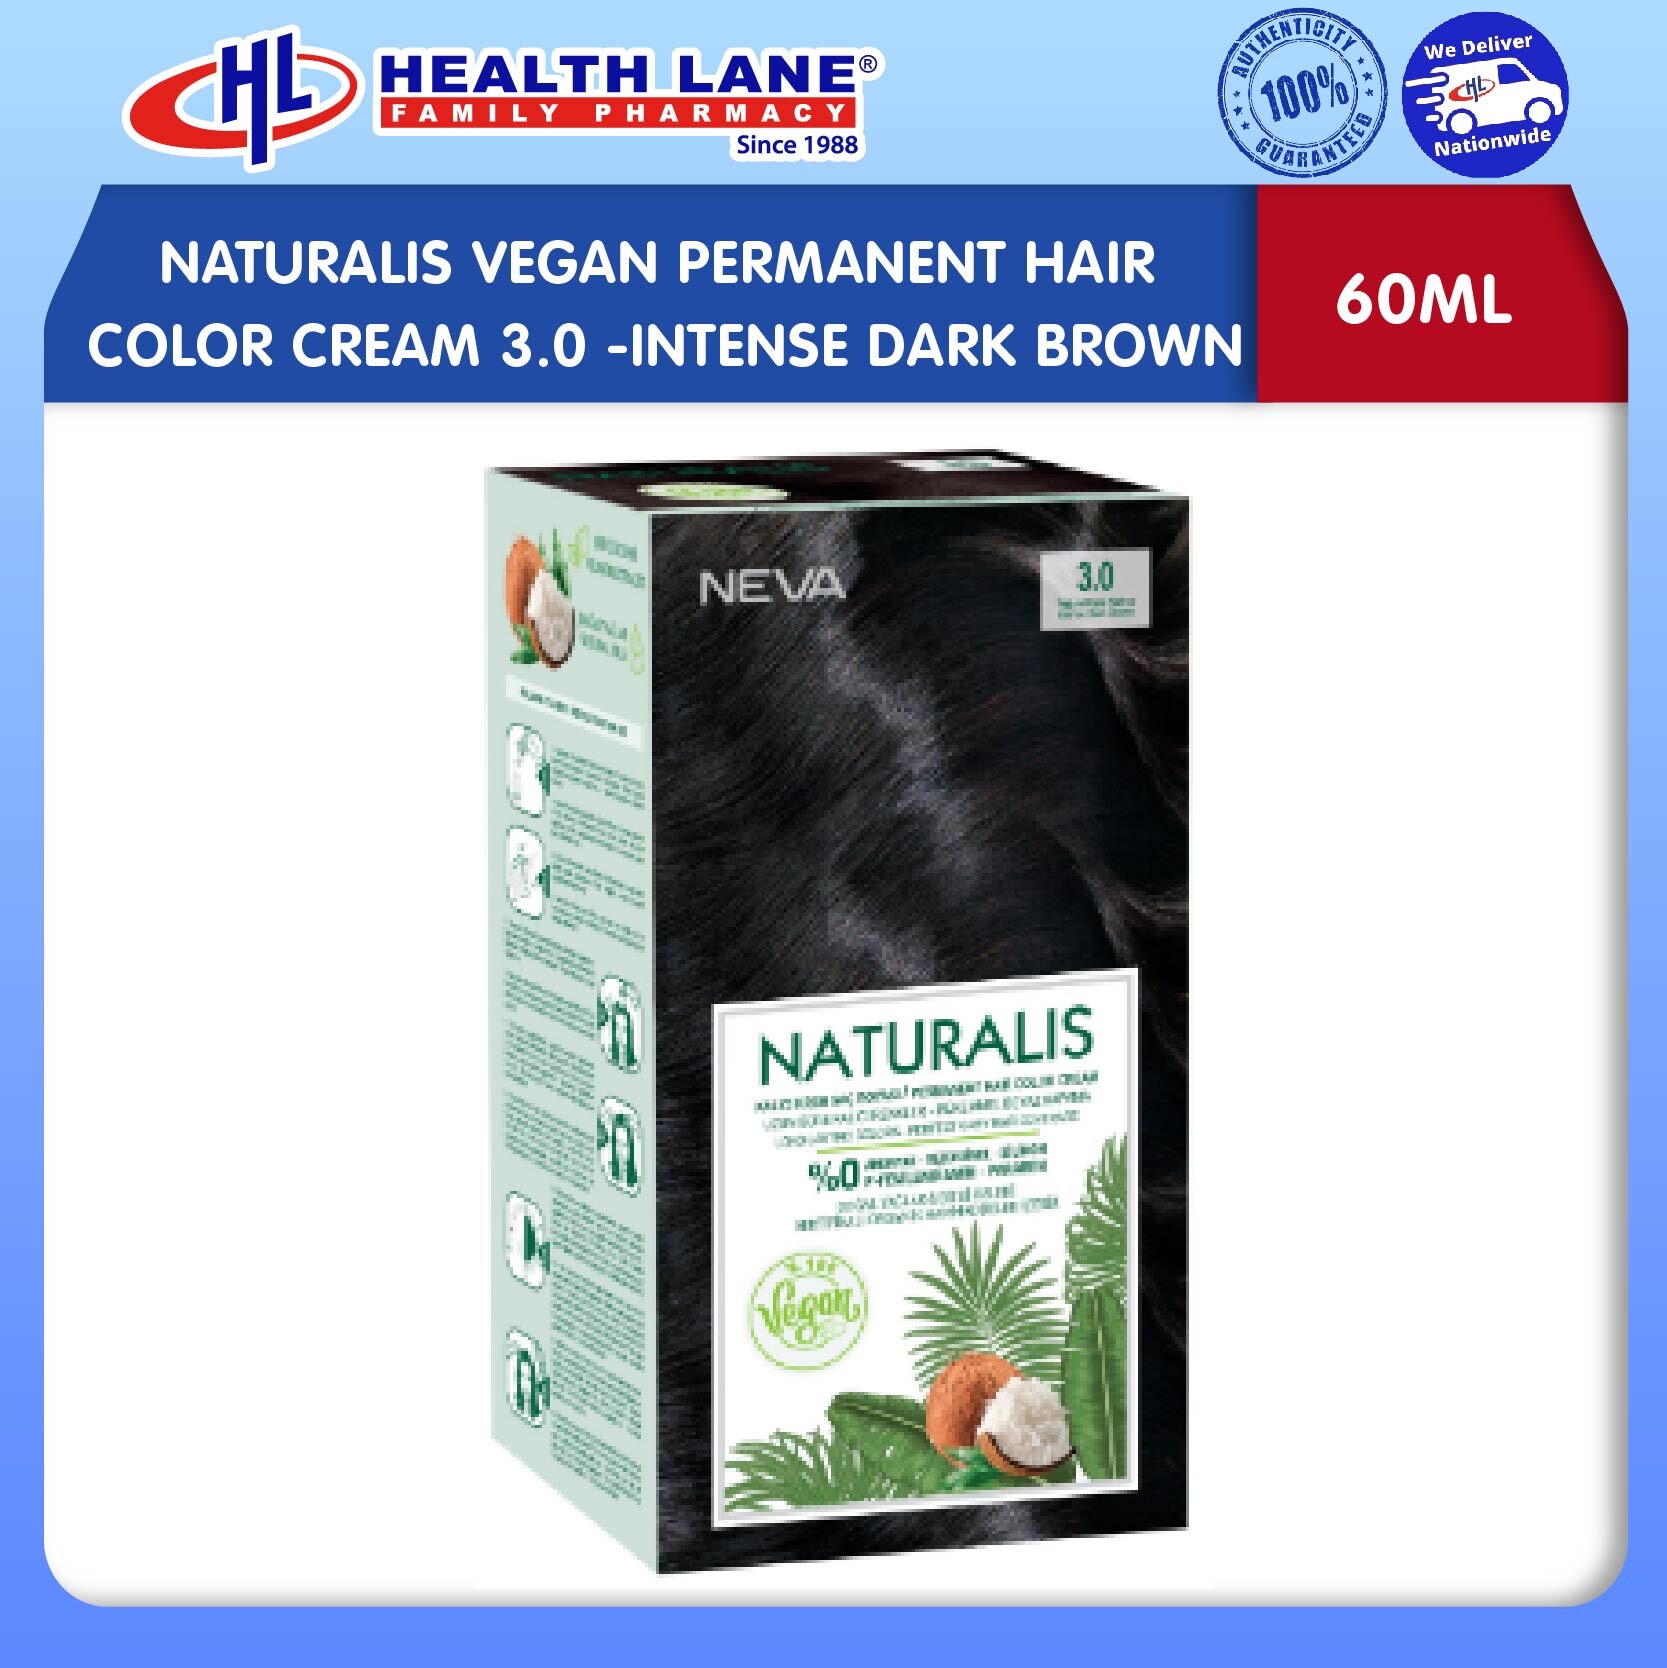 NATURALIS VEGAN PERMANENT HAIR COLOR CREAM 3.0 - INTENSE DARK BROWN (60ML)